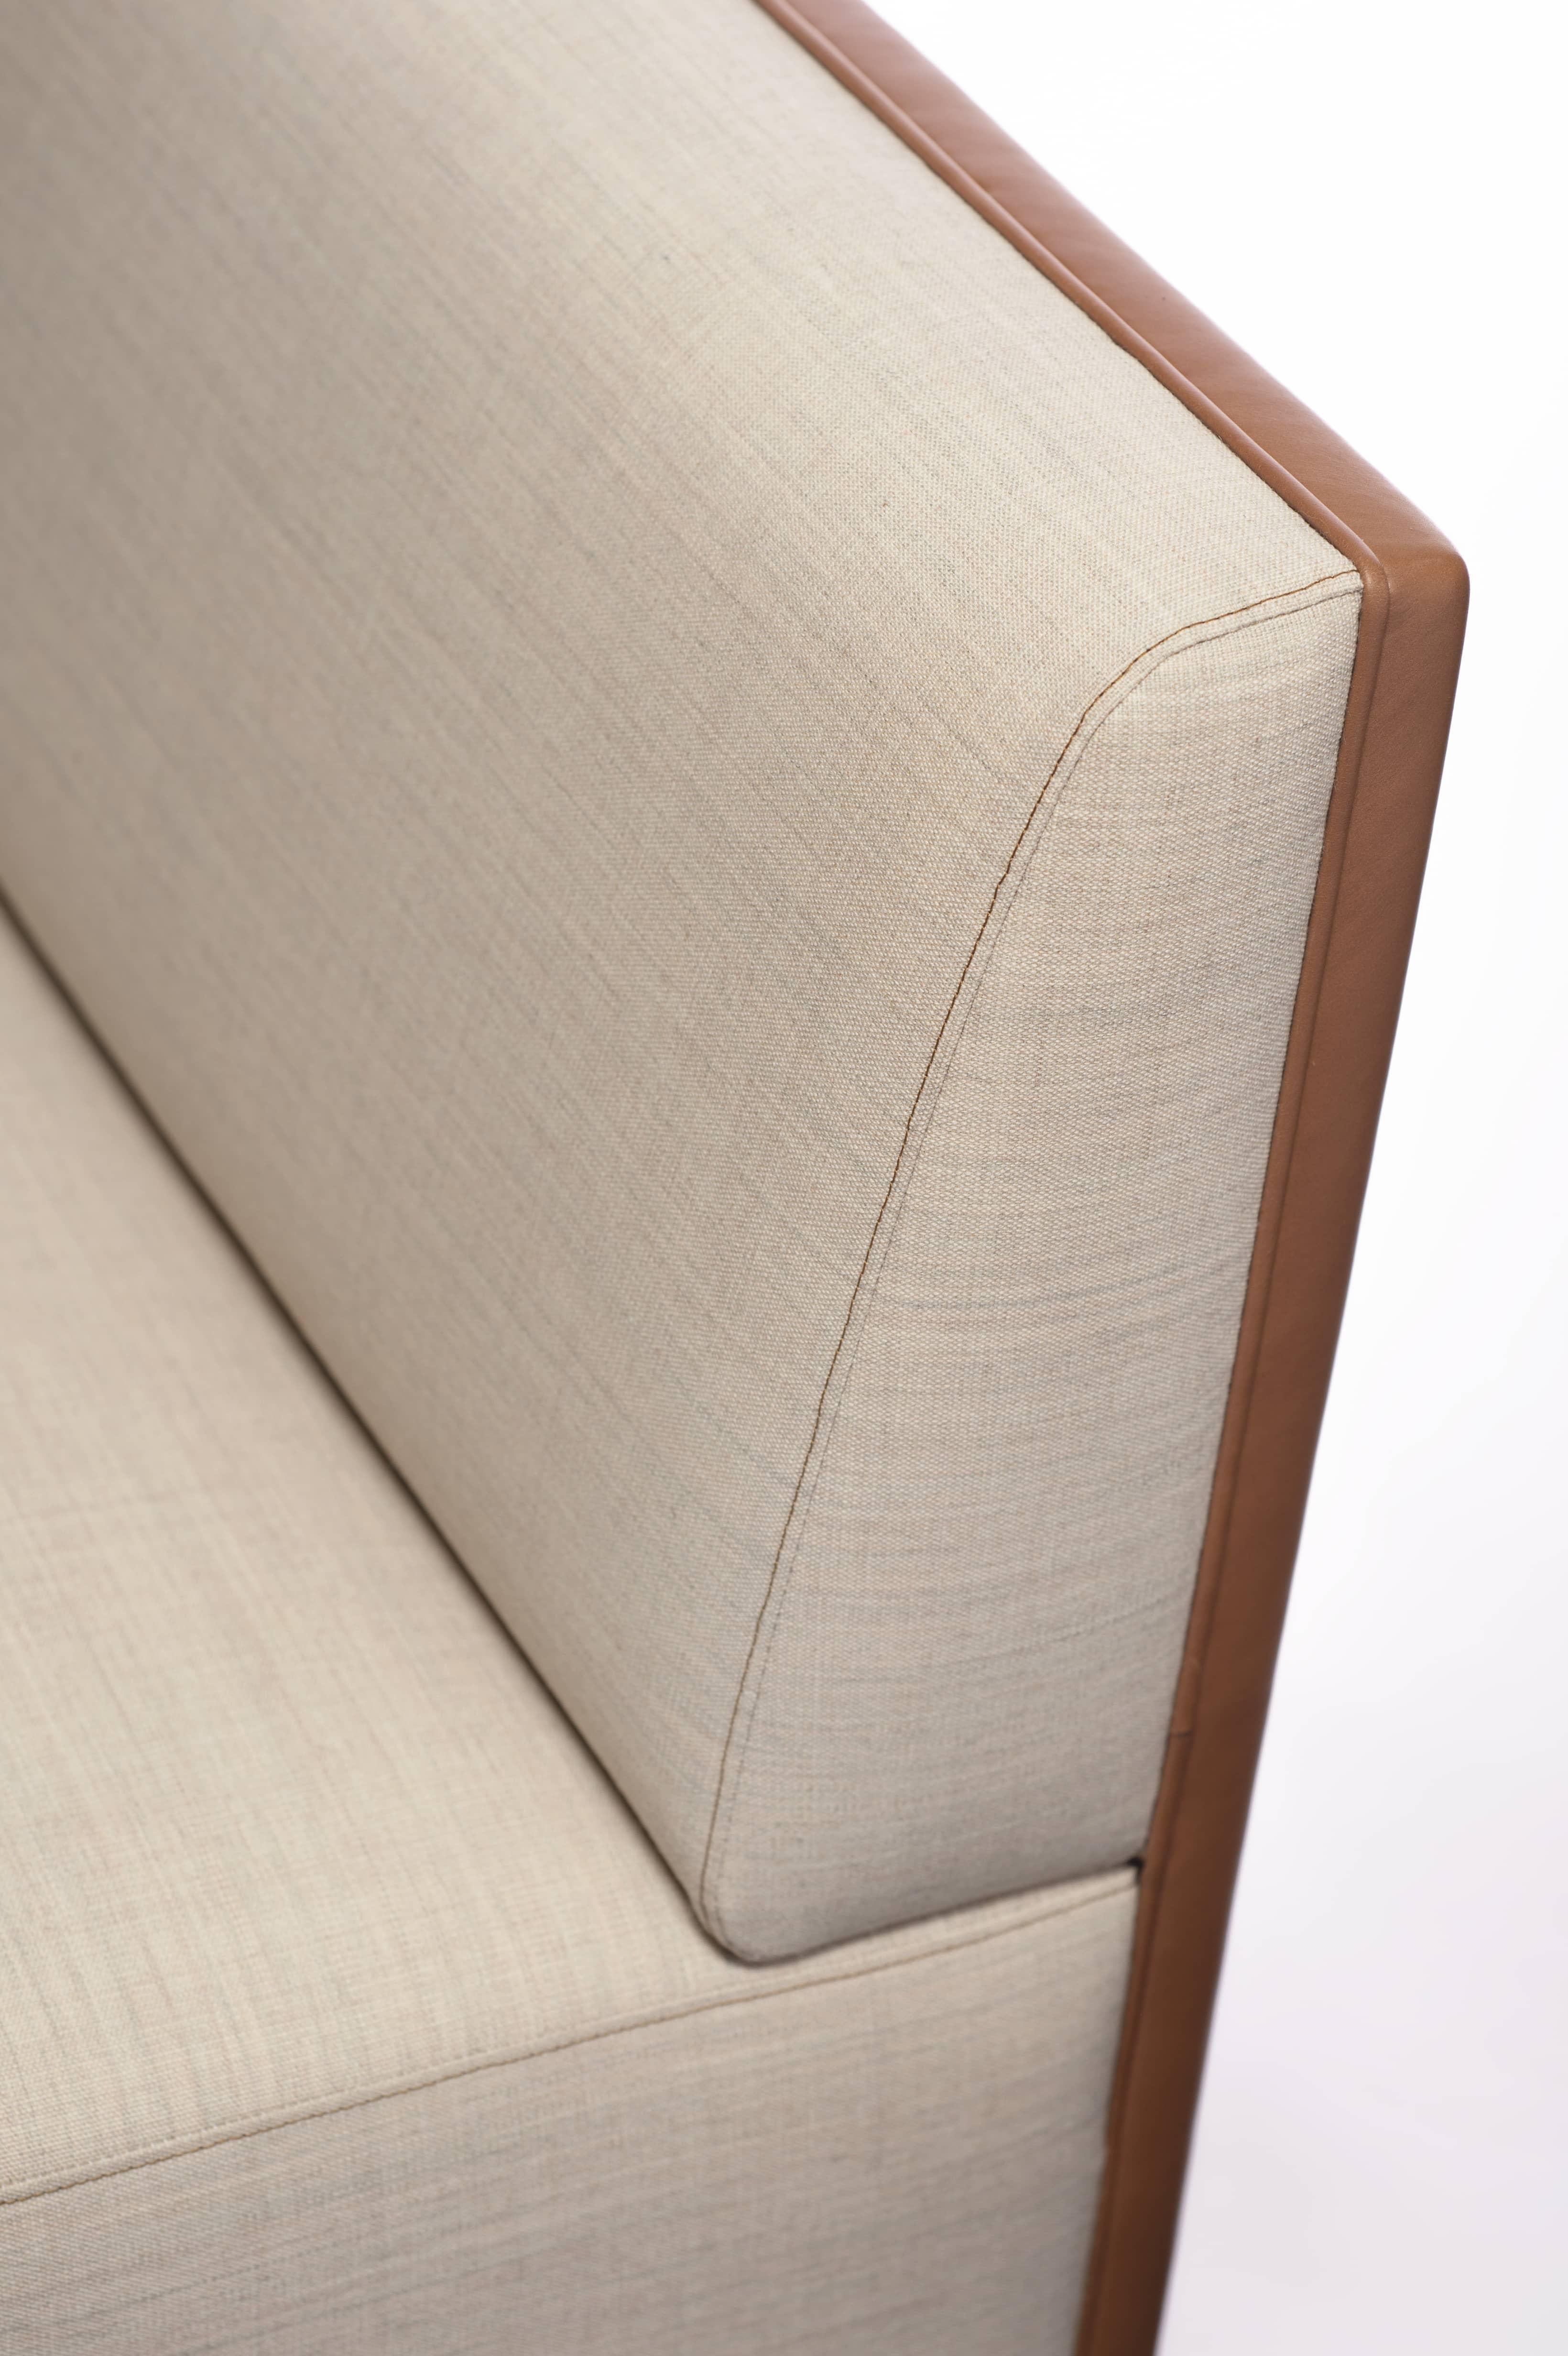 Ce mobilier artisanal, composé d'un canapé (ici proposé) et de deux fauteuils, a été conçu par Vincent Lebourdon pour un salon parisien afin d'offrir plusieurs usages et configurations de l'espace. Ce mobilier alliant de beaux matériaux, des lignes